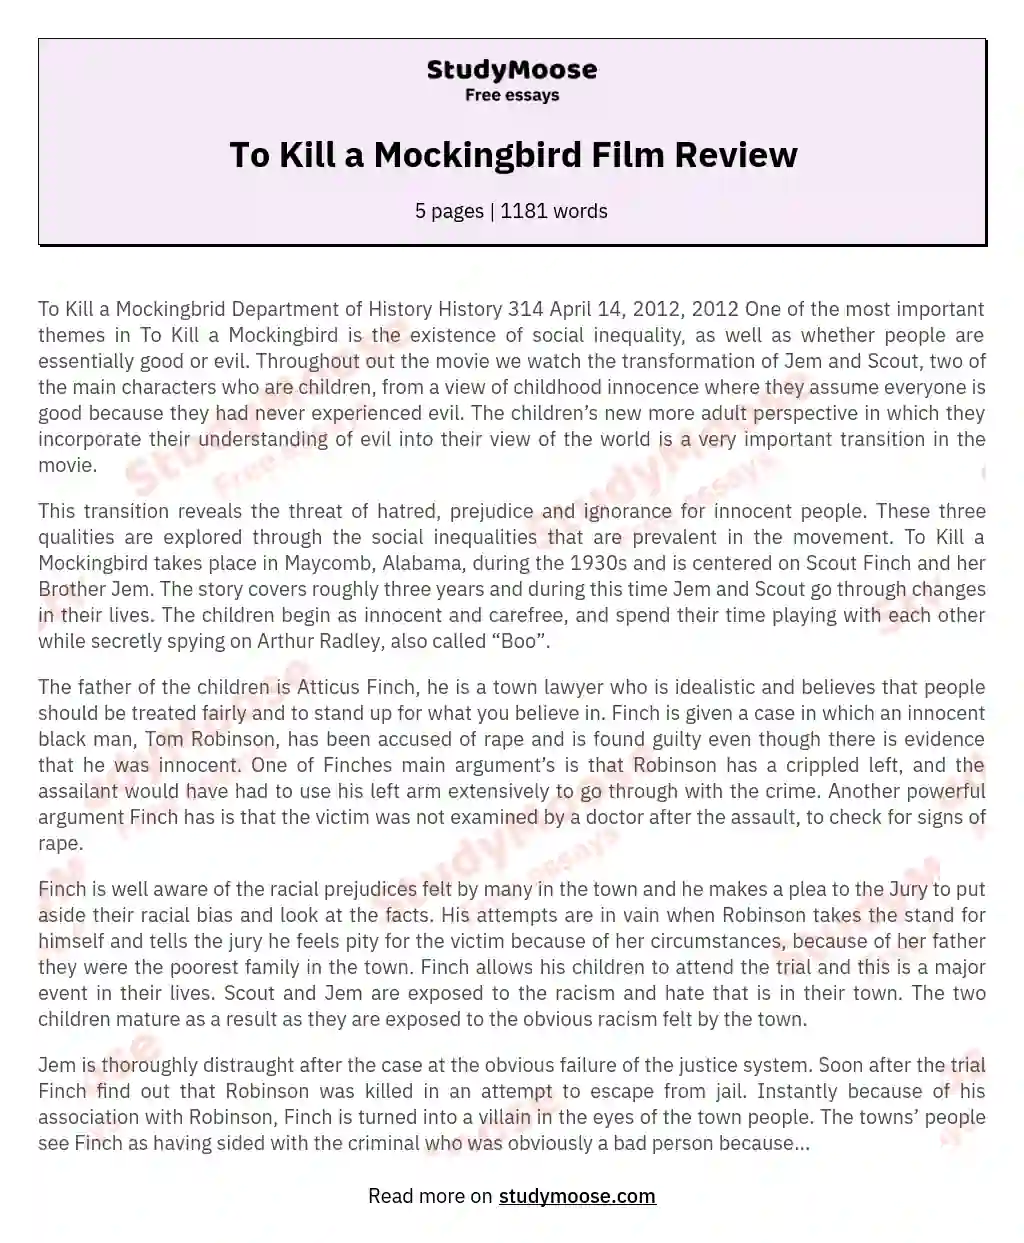 To Kill a Mockingbird Film Review essay